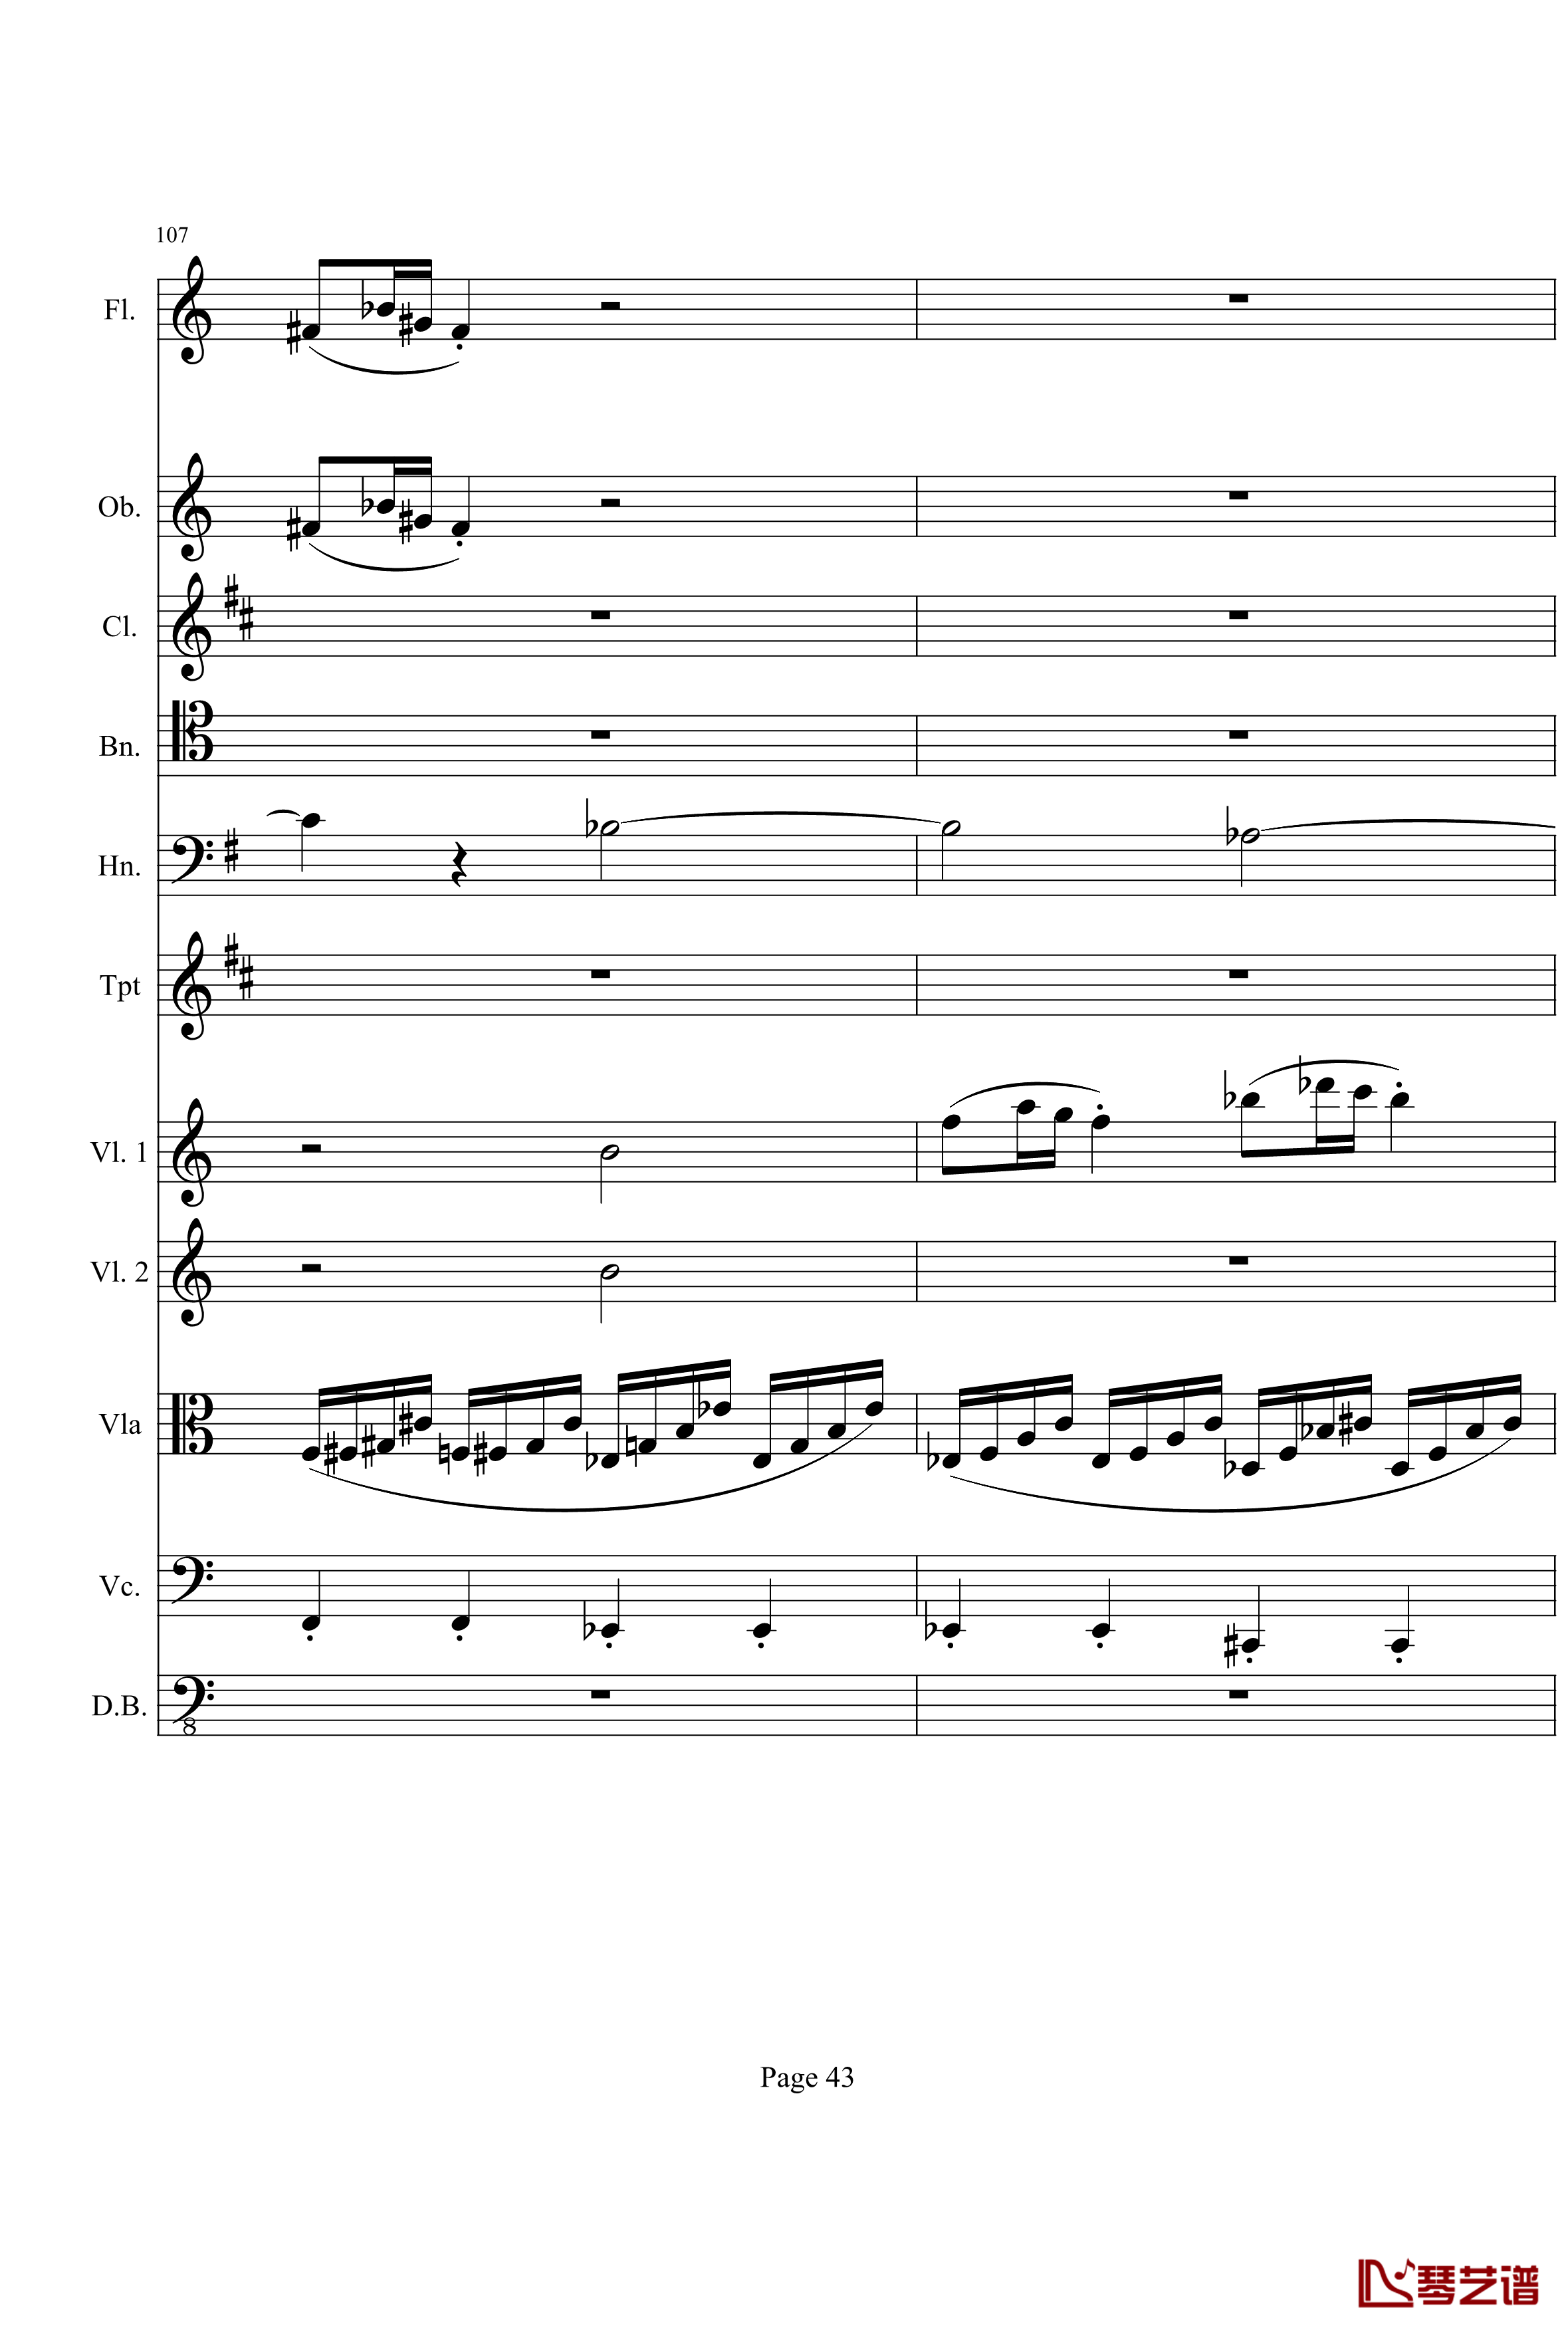 奏鸣曲之交响钢琴谱-第21首-Ⅰ-贝多芬-beethoven43